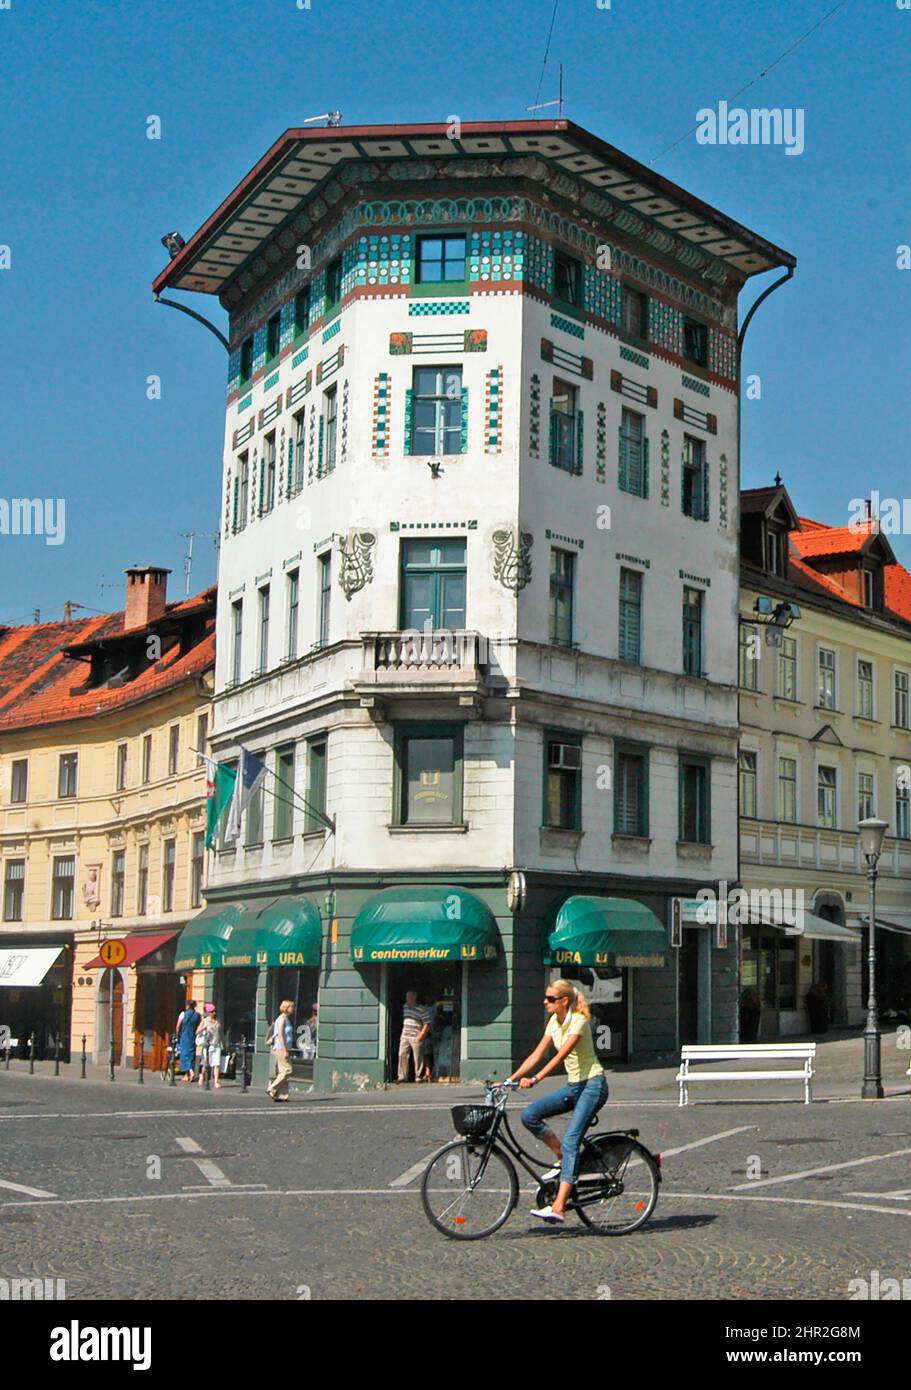 square, Ljubljana, Slovenia Stock Photo